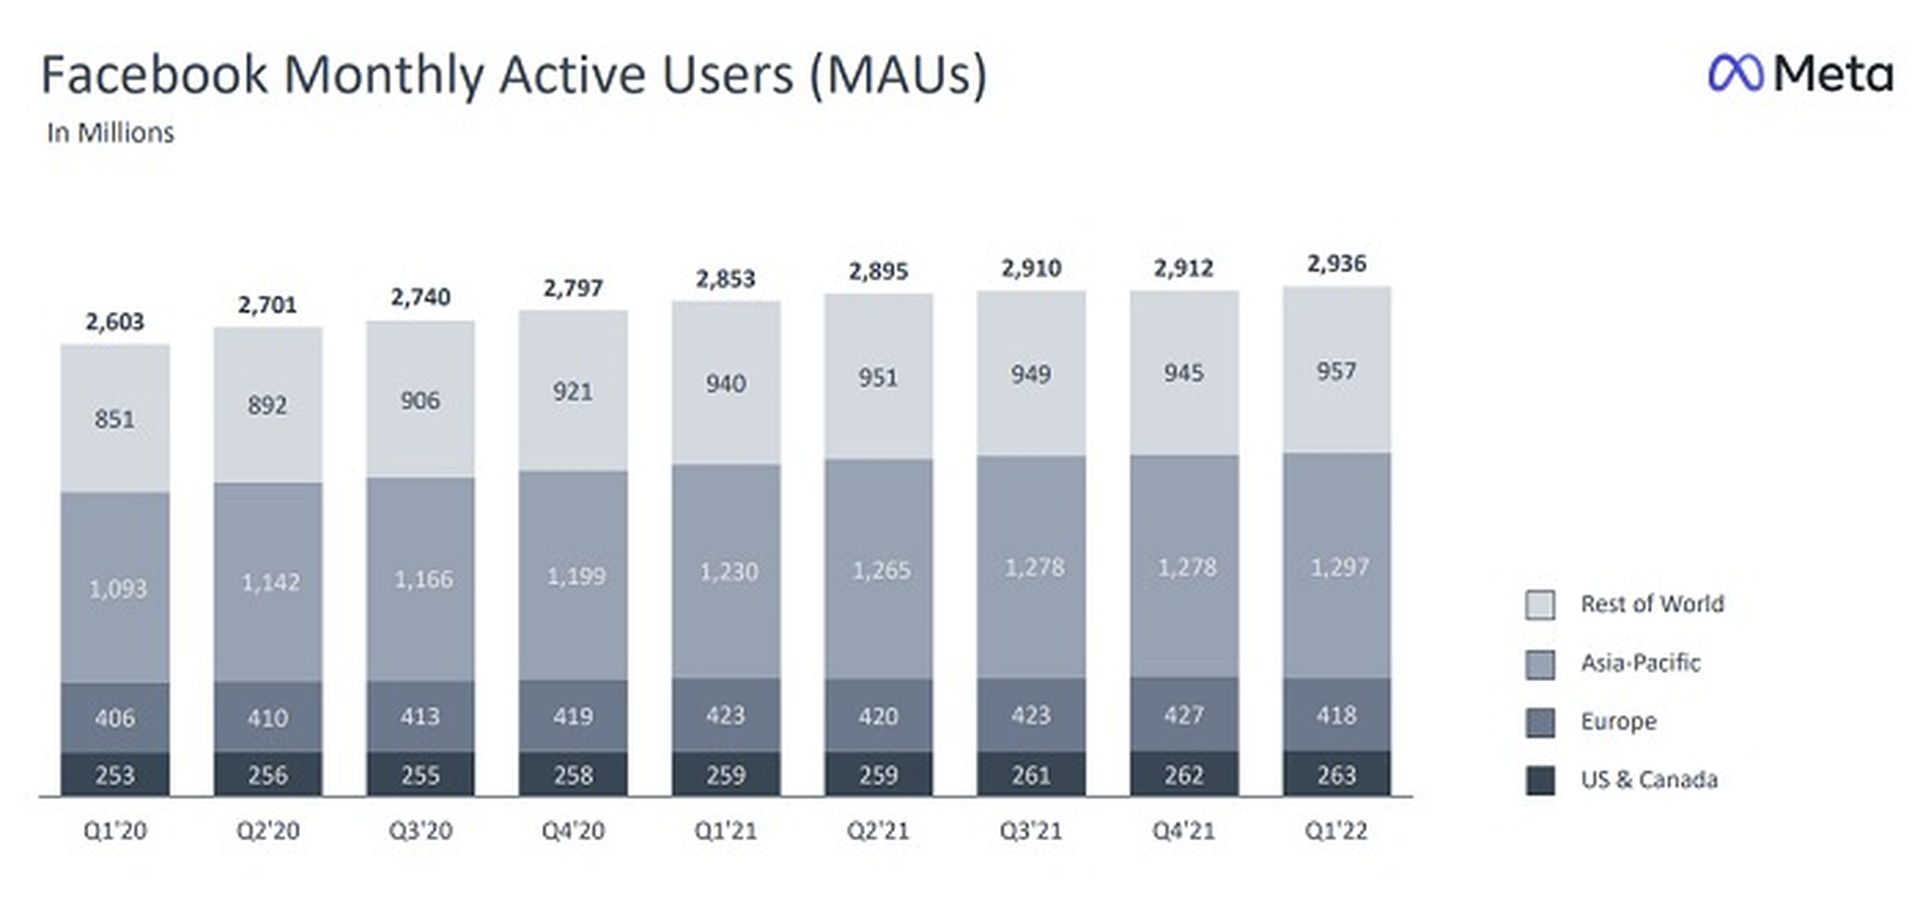 Le rapport sur les méta-bénéfices souligne la croissance des utilisateurs sur Facebook